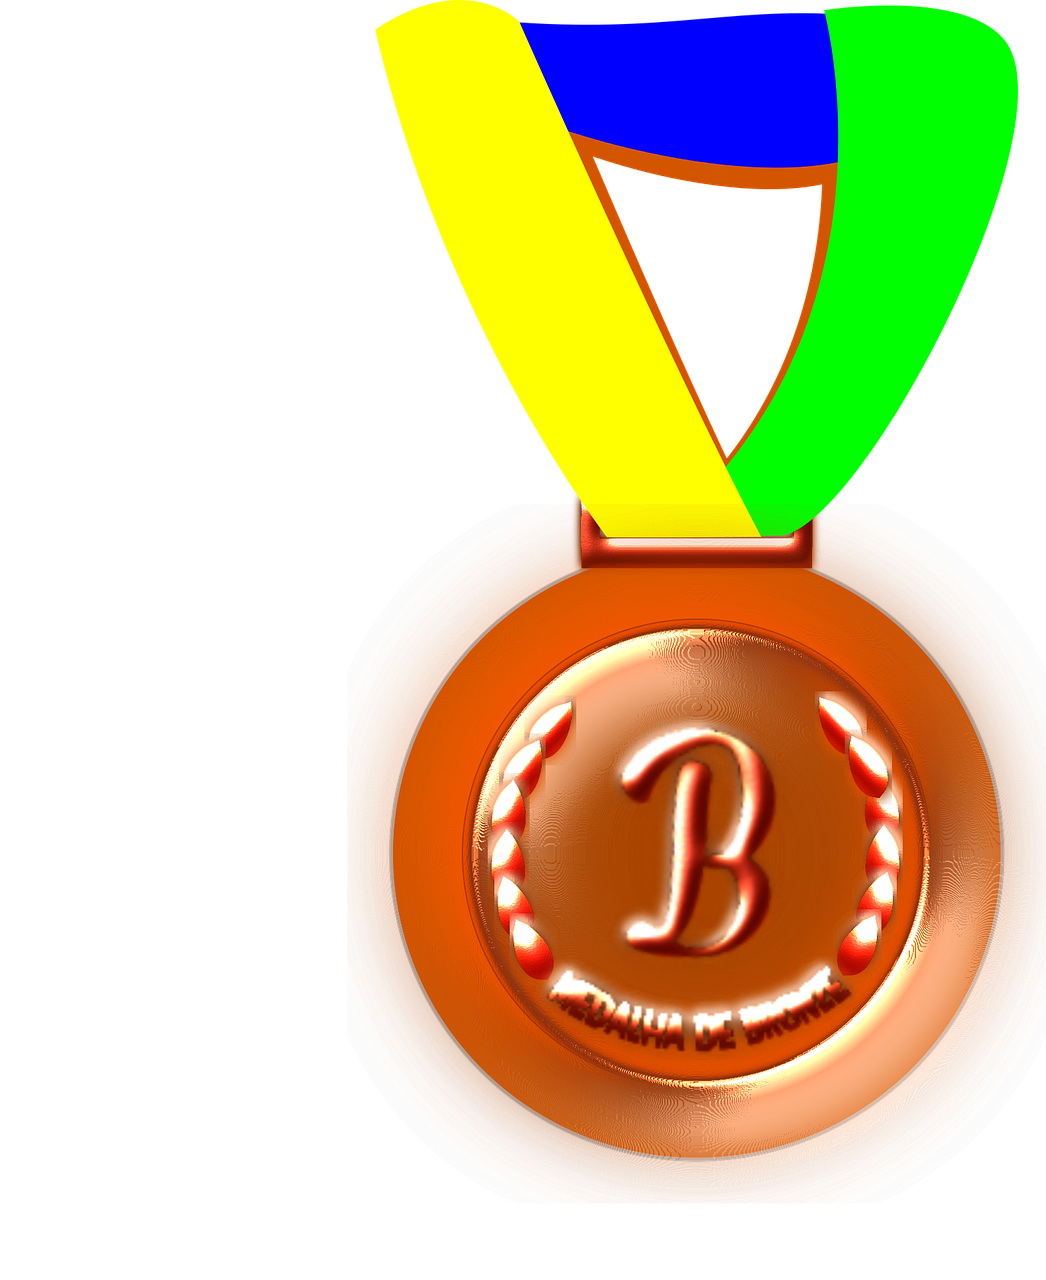 Bronze medal - medal png download - 1046*1280 - Free Transparent Bronze ...